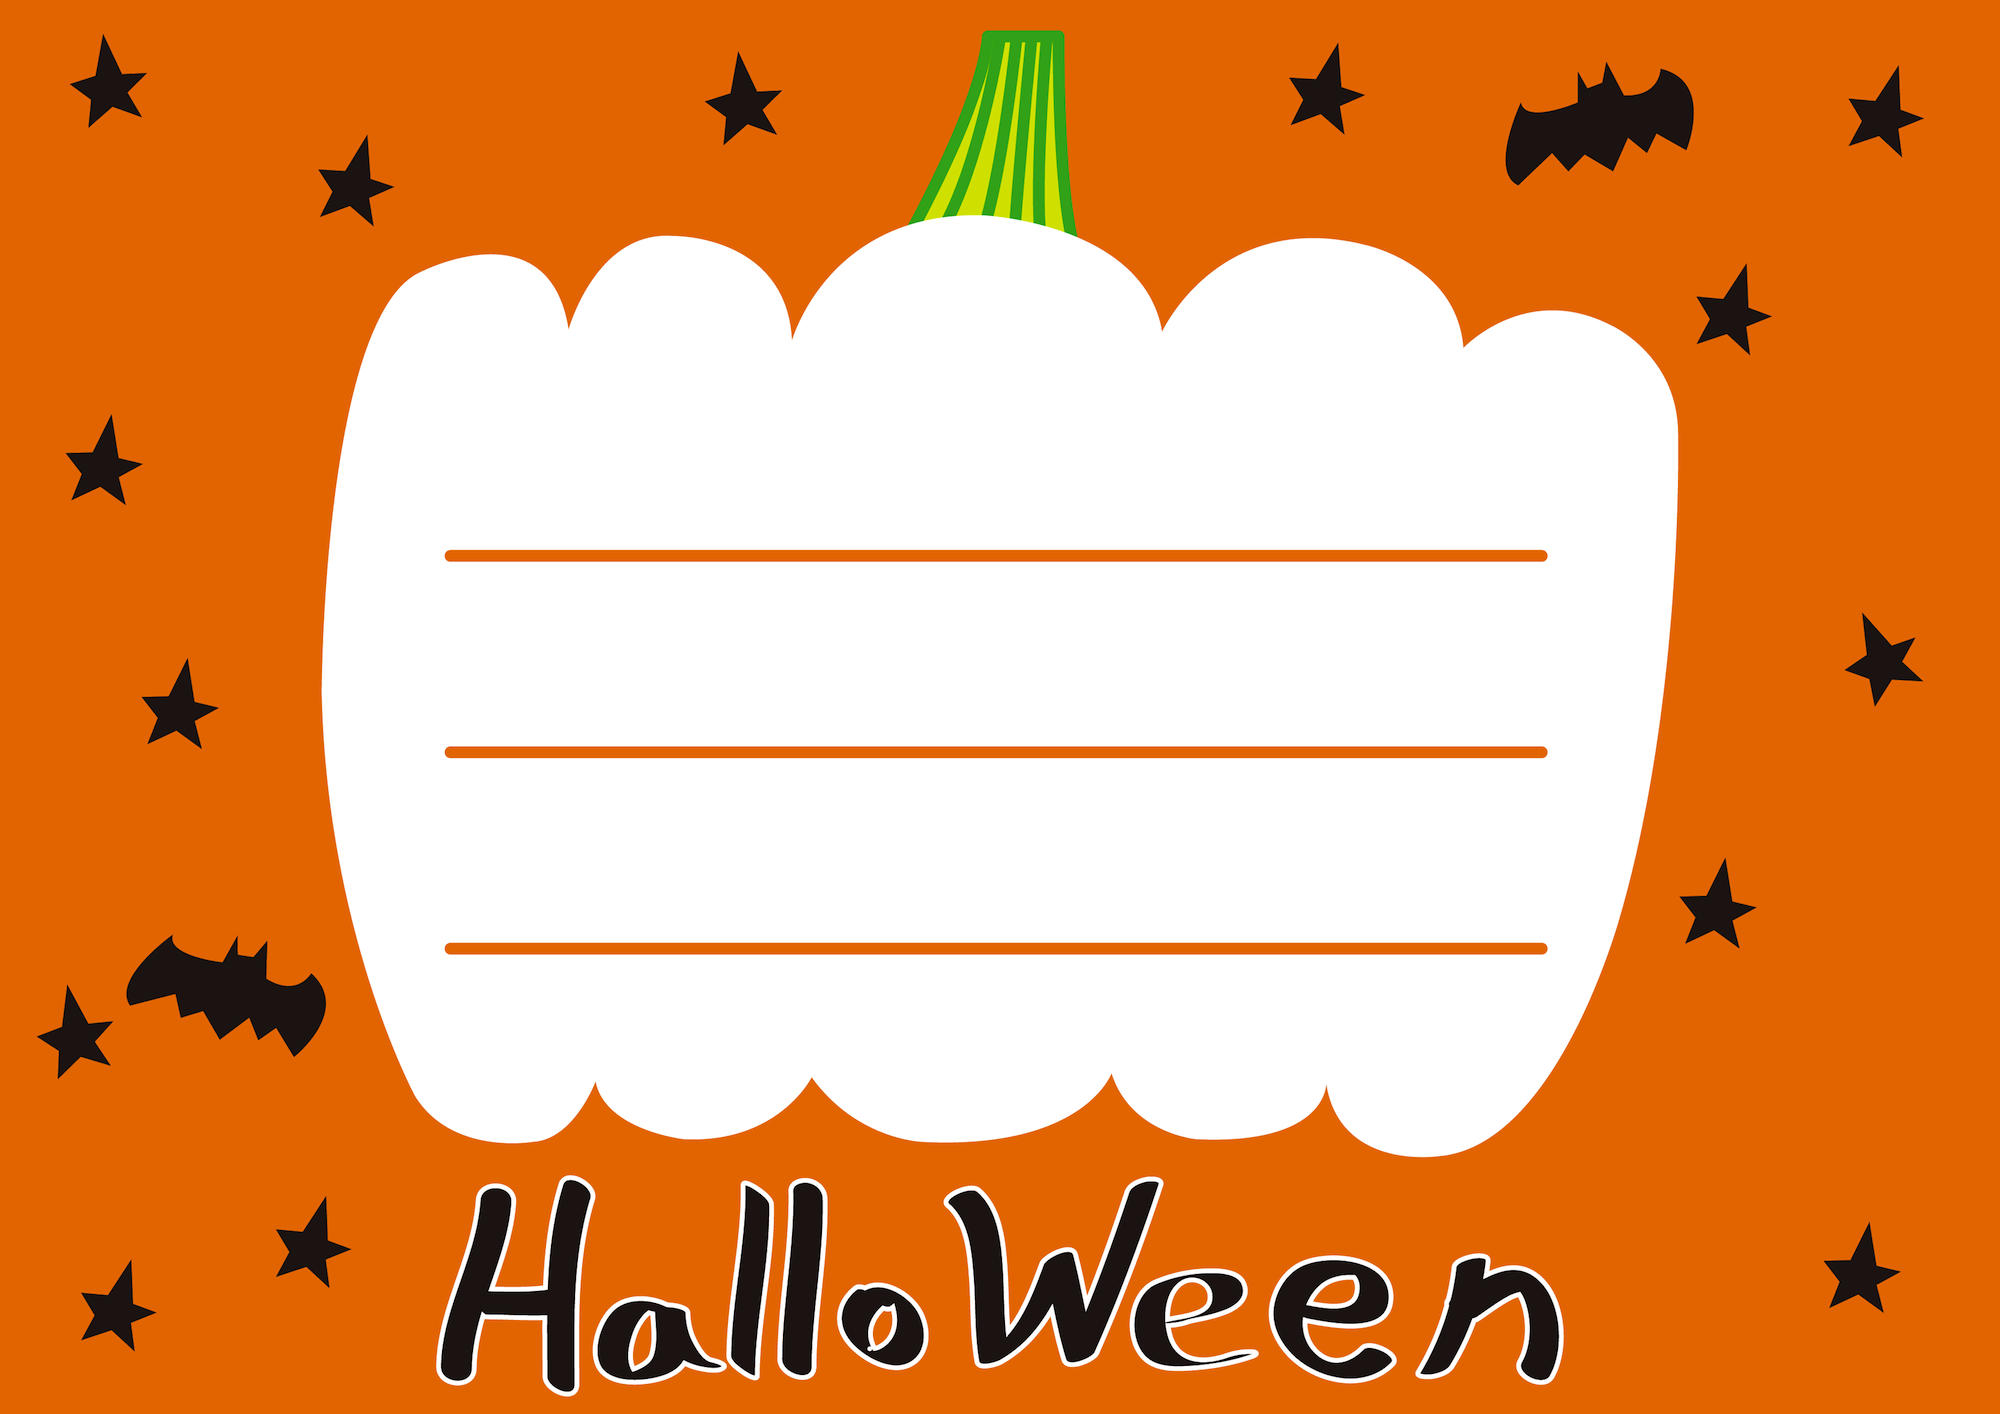 Halloweenハロウィンお化けかぼちゃ枠メッセージカードイラスト 無料